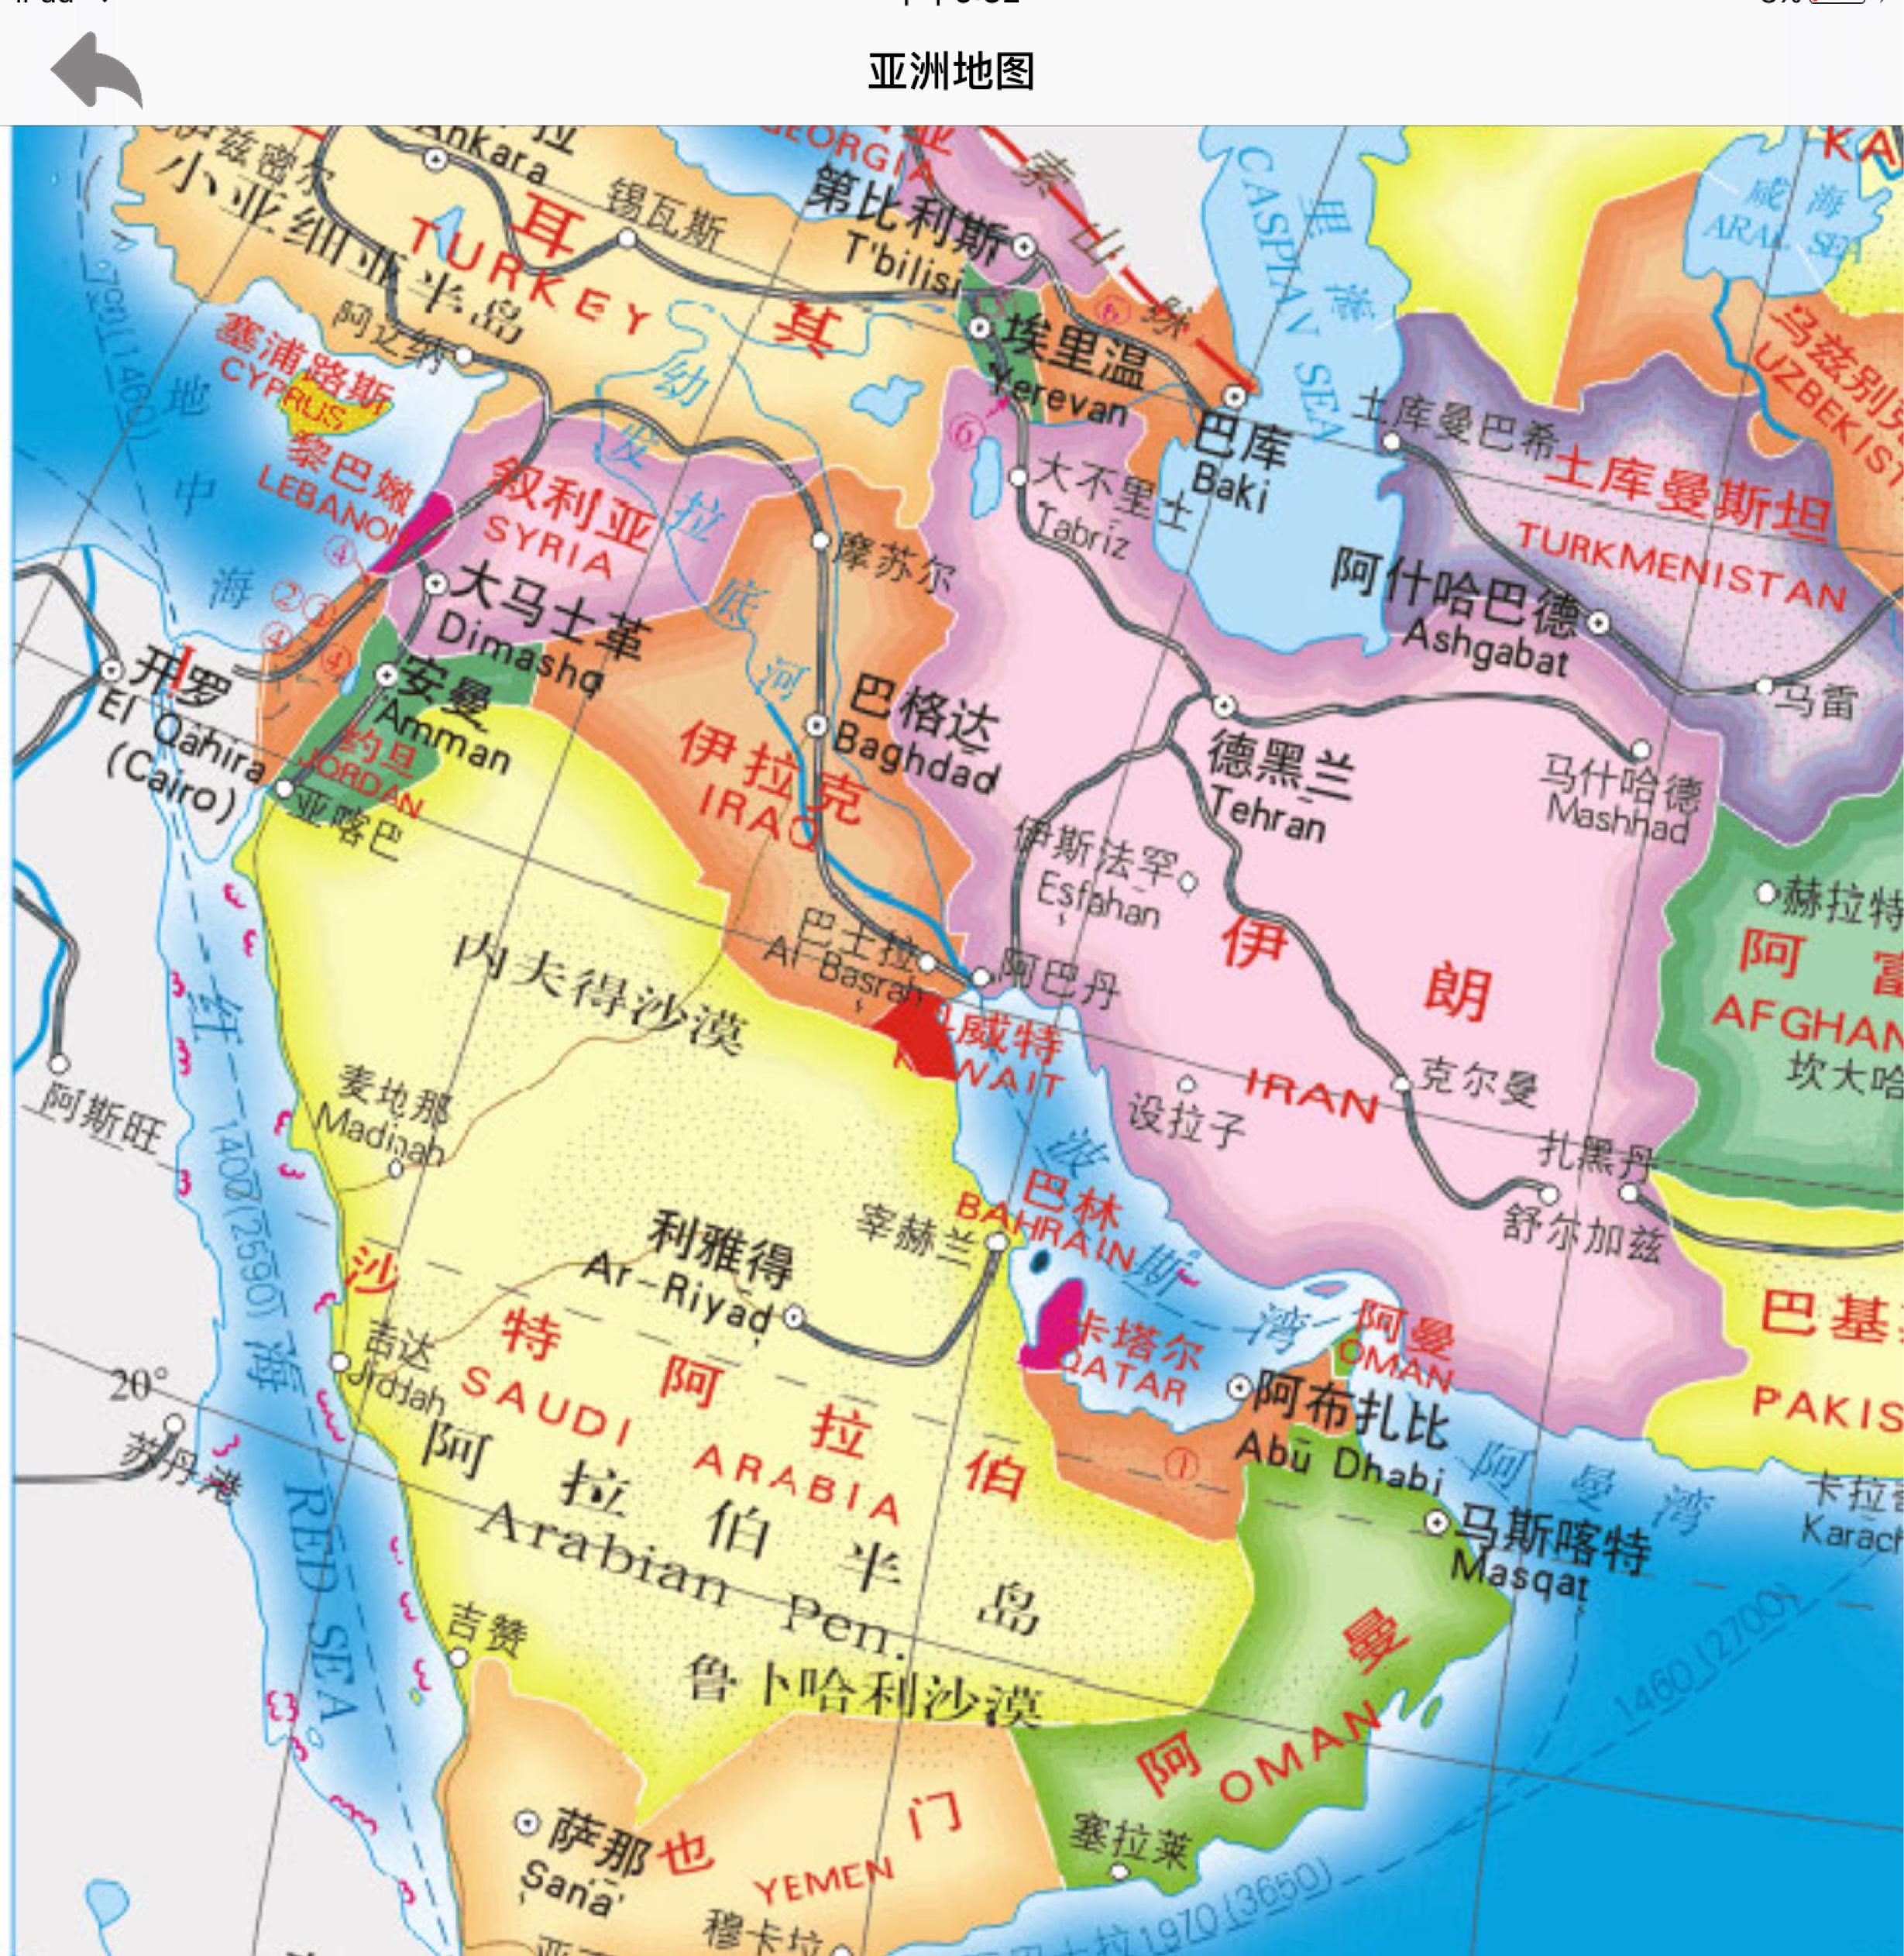 【阿拉伯帝国】先知时代的阿拉伯半岛（下）622-632年——电影《Message》CUT（下）_哔哩哔哩 (゜-゜)つロ 干杯~-bilibili